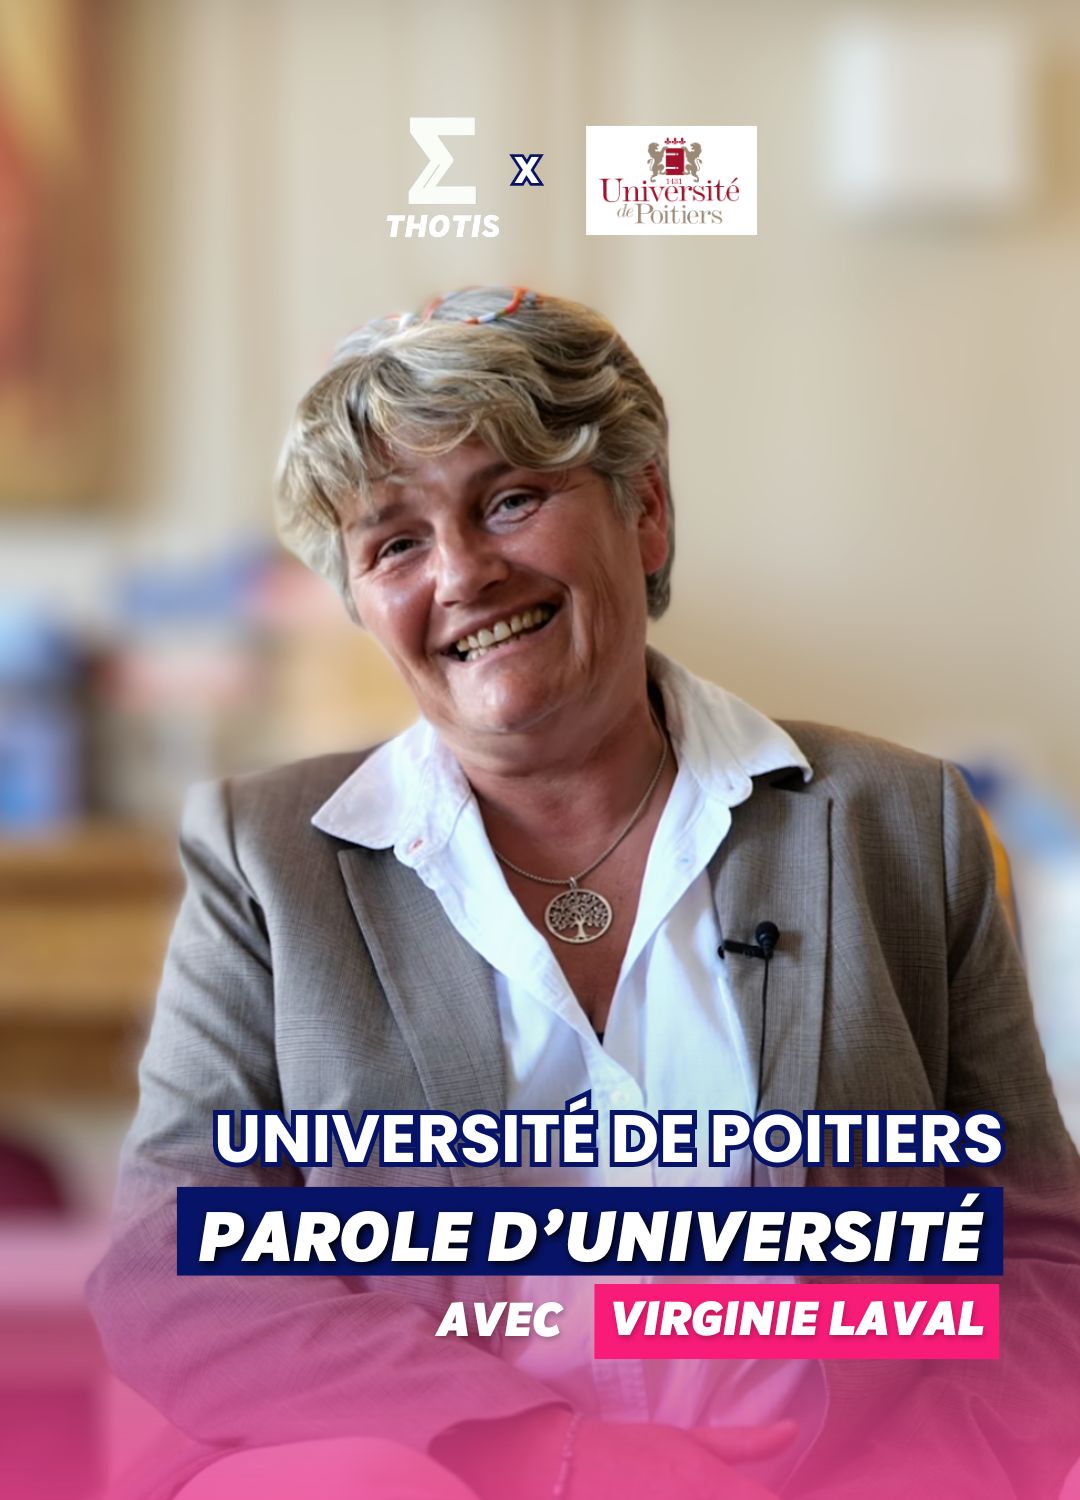 Parole d'université de Poitiers avec Virginie Laval